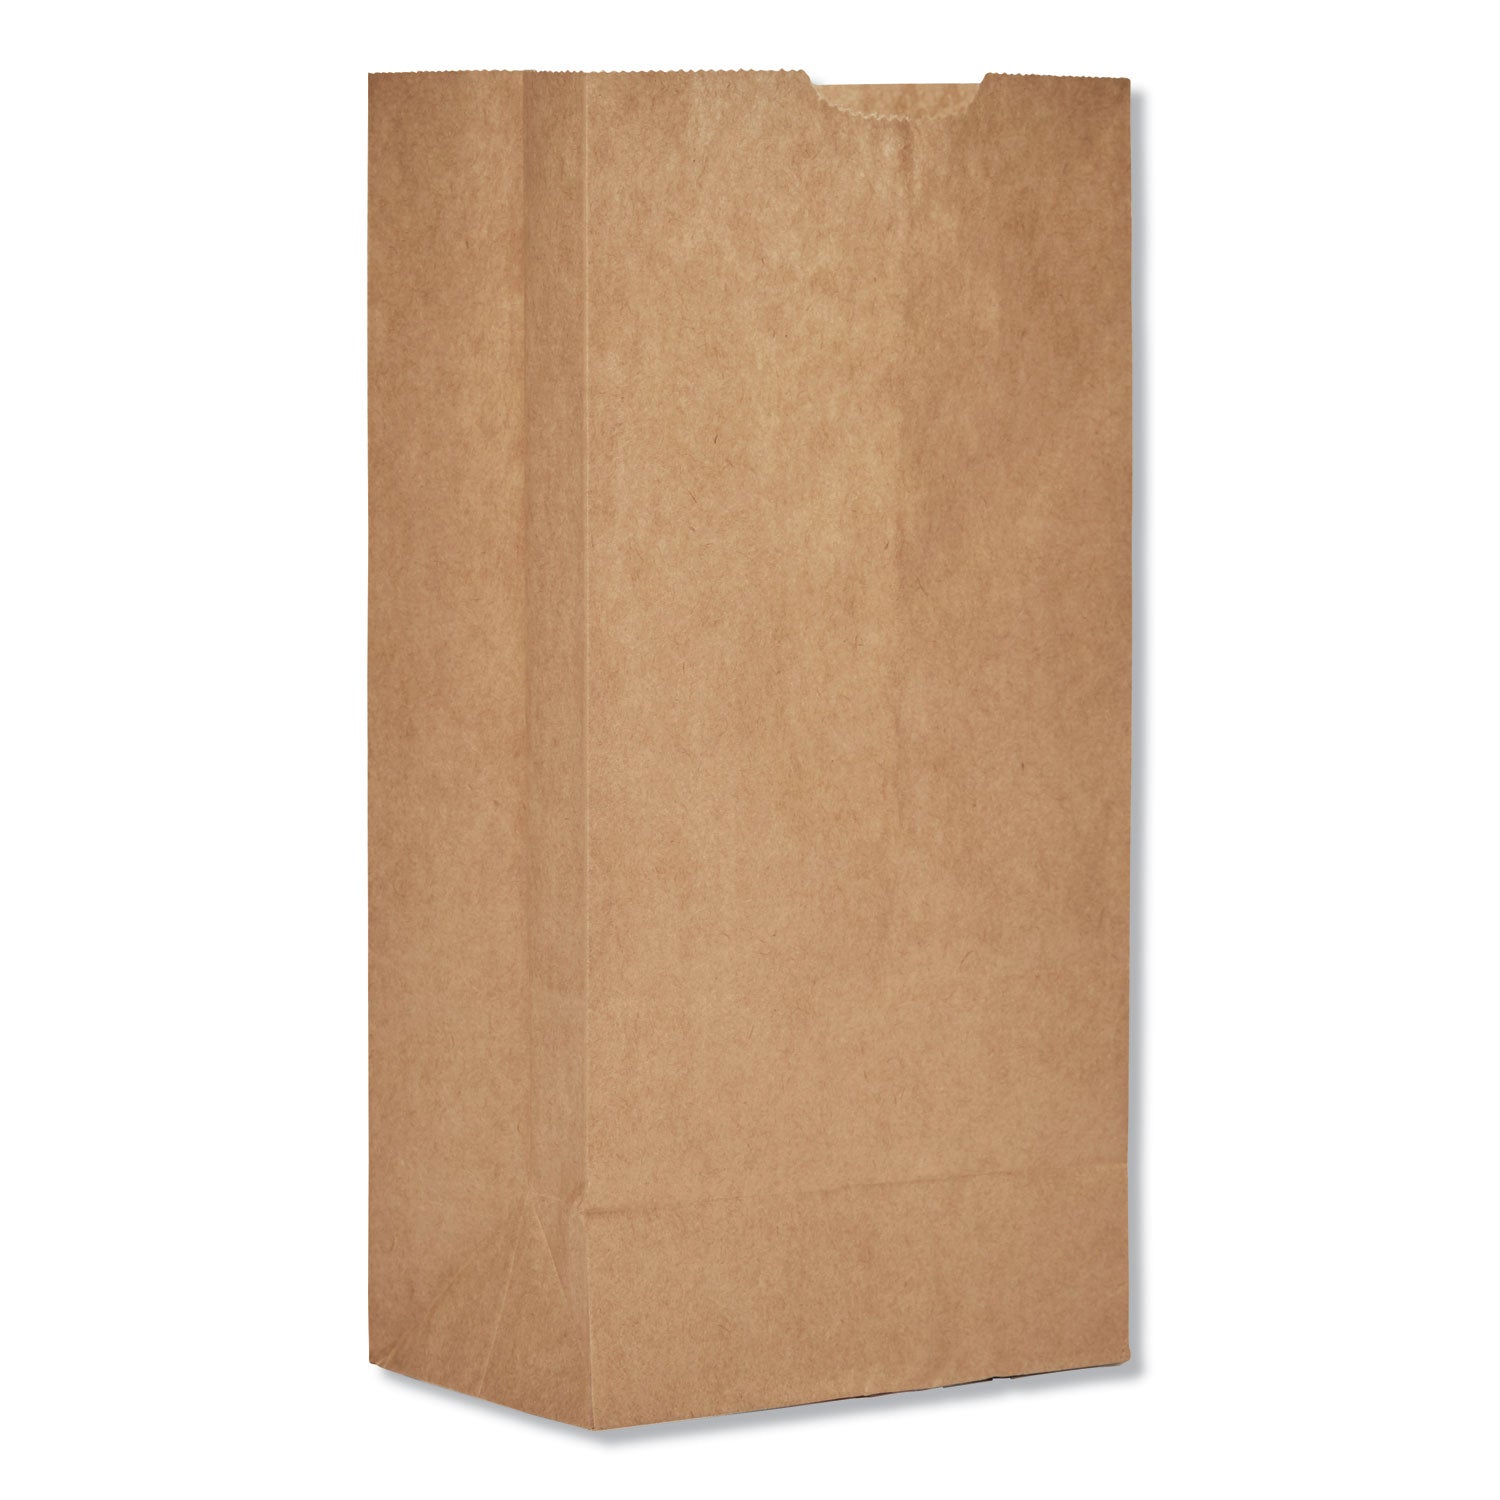 grocery-paper-bags-30-lb-capacity-#4-5-x-333-x-975-kraft-500-bags_baggk4500 - 1